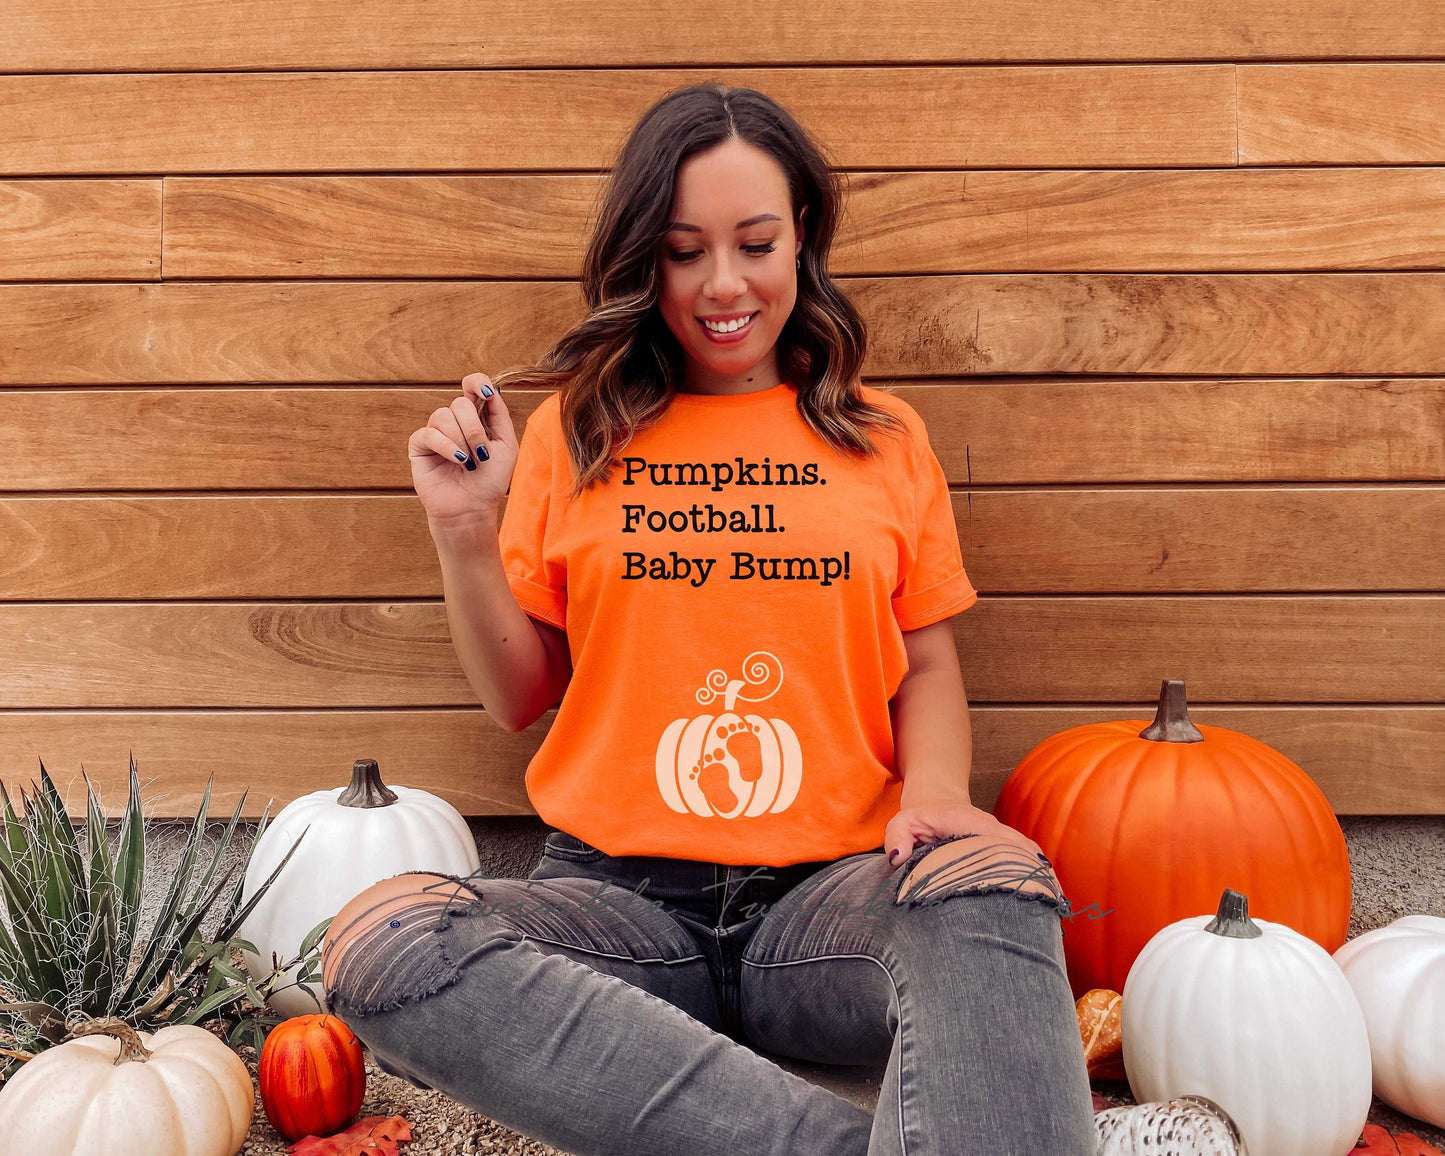 Pumpkins. Football. Baby Bump t-shirt - thanksgiving pregnancy announcement shirt - pregnancy shirt - maternity shirt